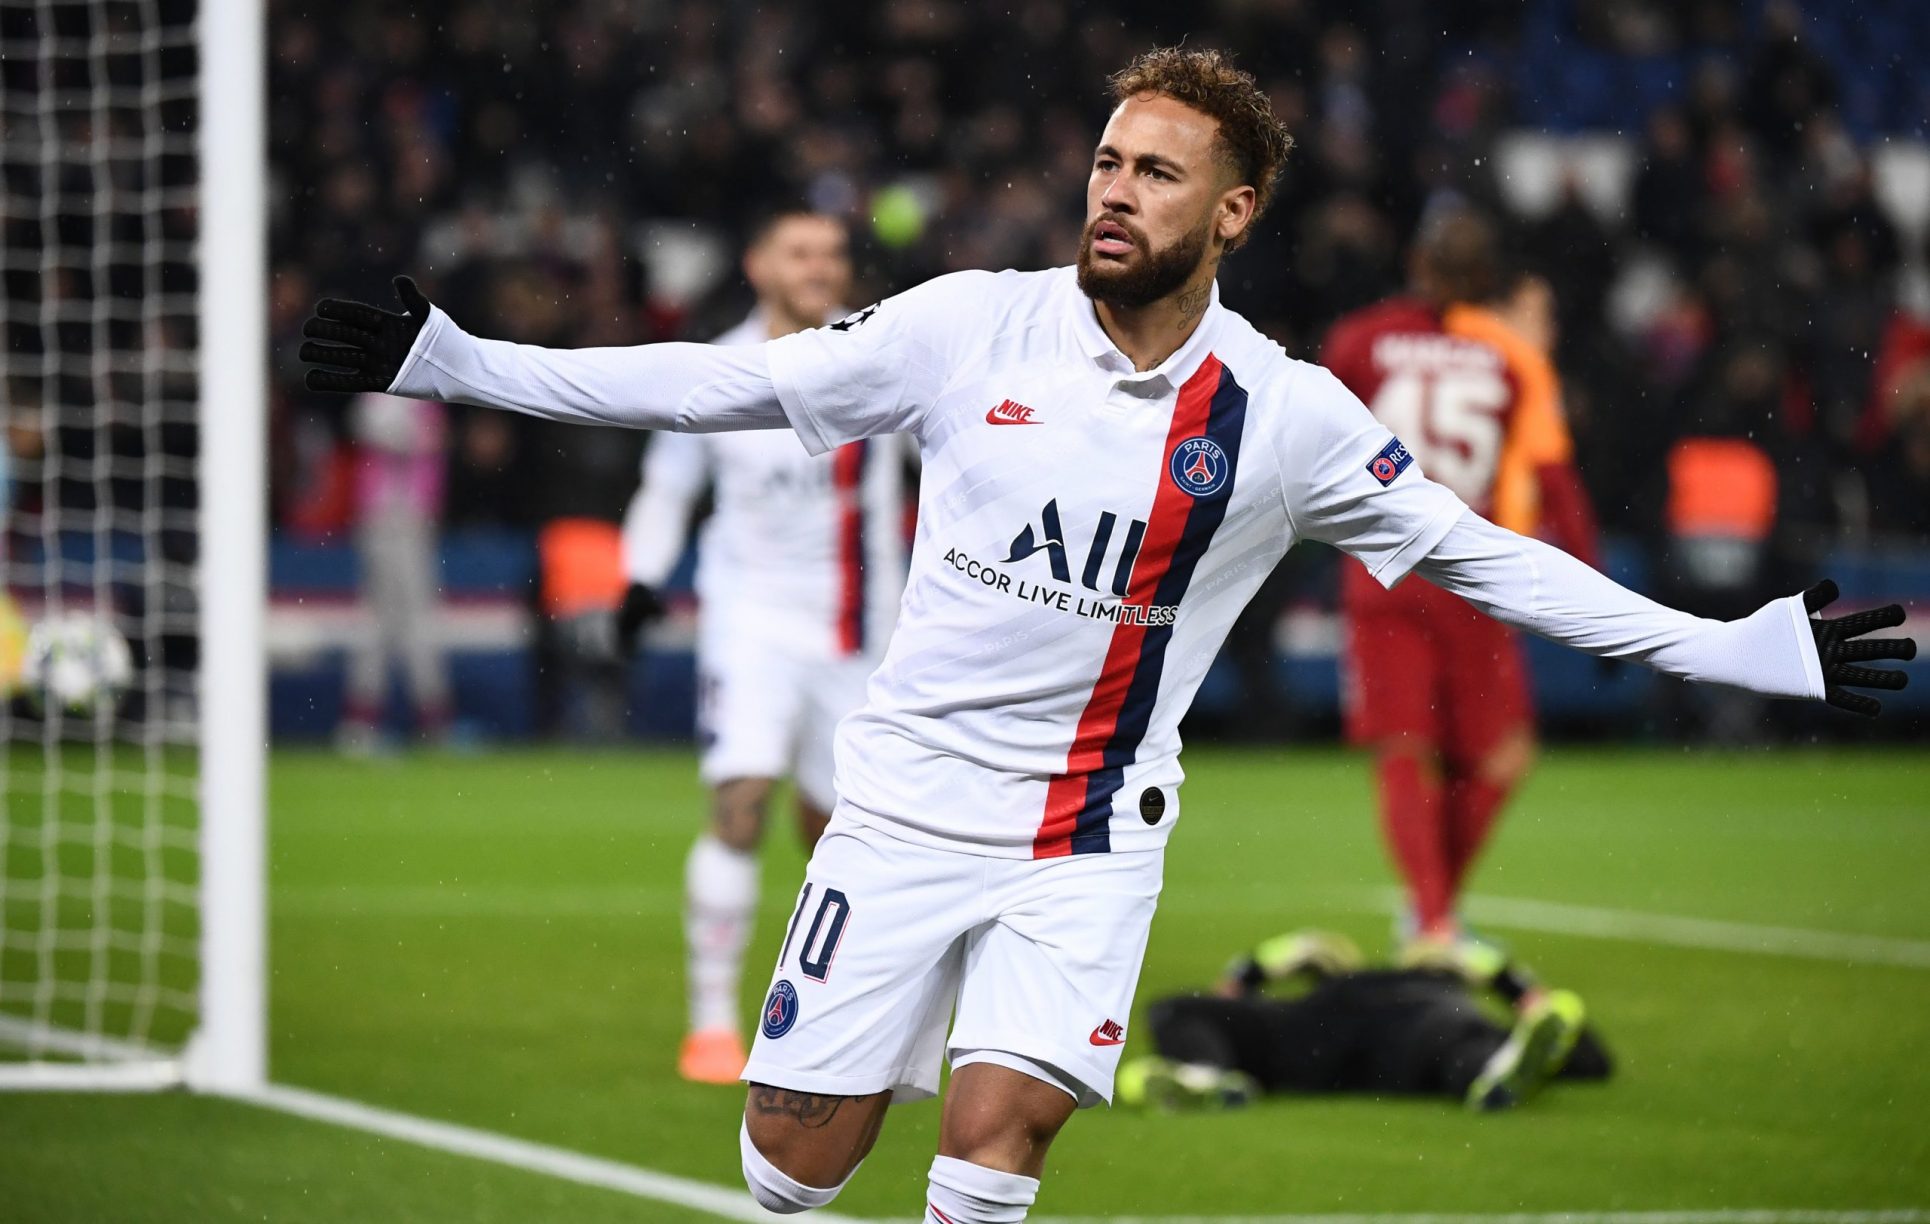 “Mi prioridad es el París Saint Germain”, reitera Neymar